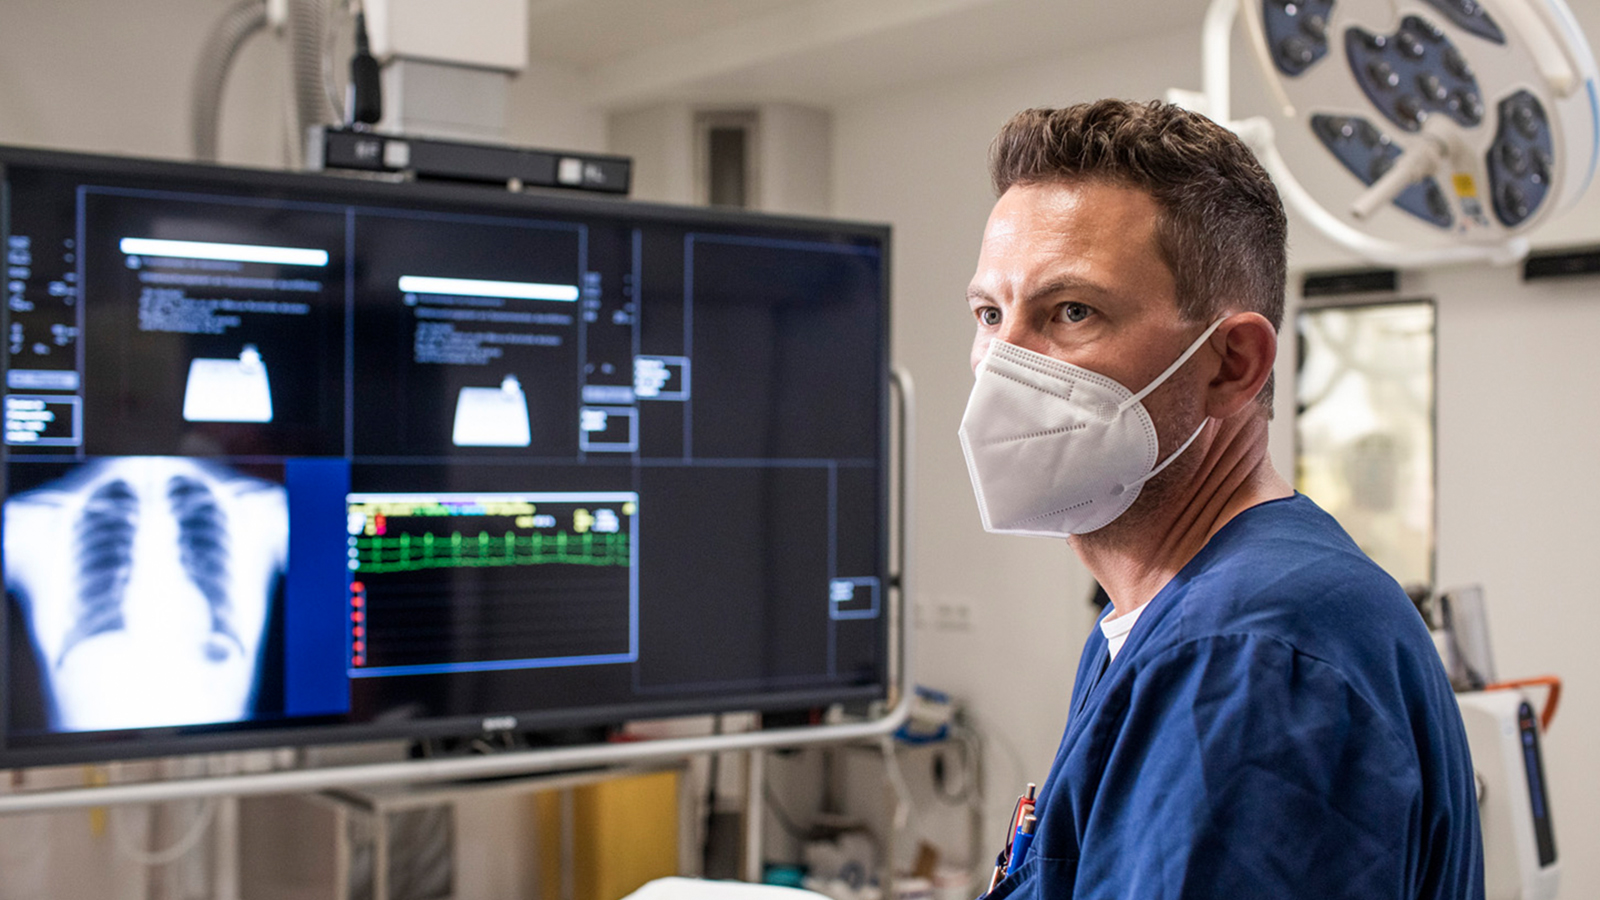 Ein Arzt oder Pfleger aus der Radiologie steht an einem Patientenbett, im Hintergrund ein riesiger Bildschirm mit einer abgebildeter Lunge.